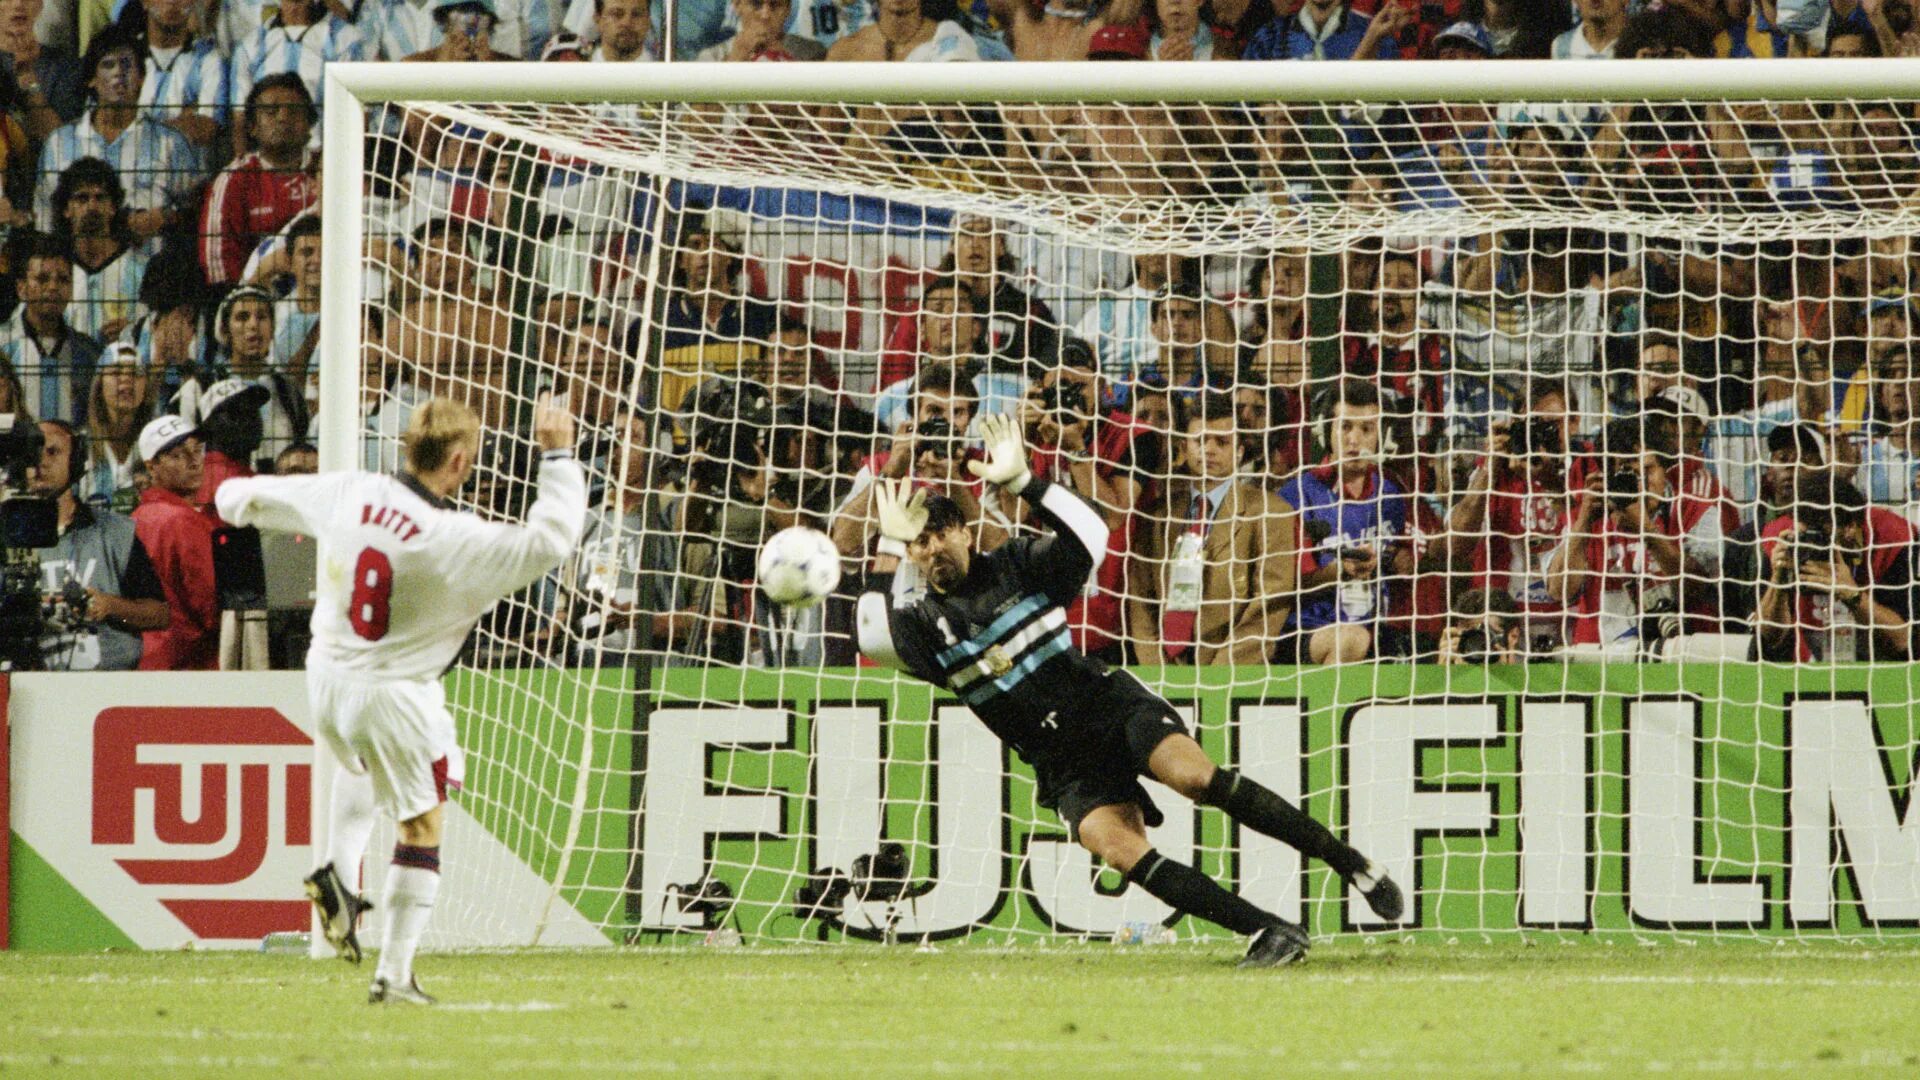 РОА вратарь Аргентина. Карлос РОА вратарь. Аргентина Англия 1998. Матч Аргентина Англия 1998. 1 июня 1998